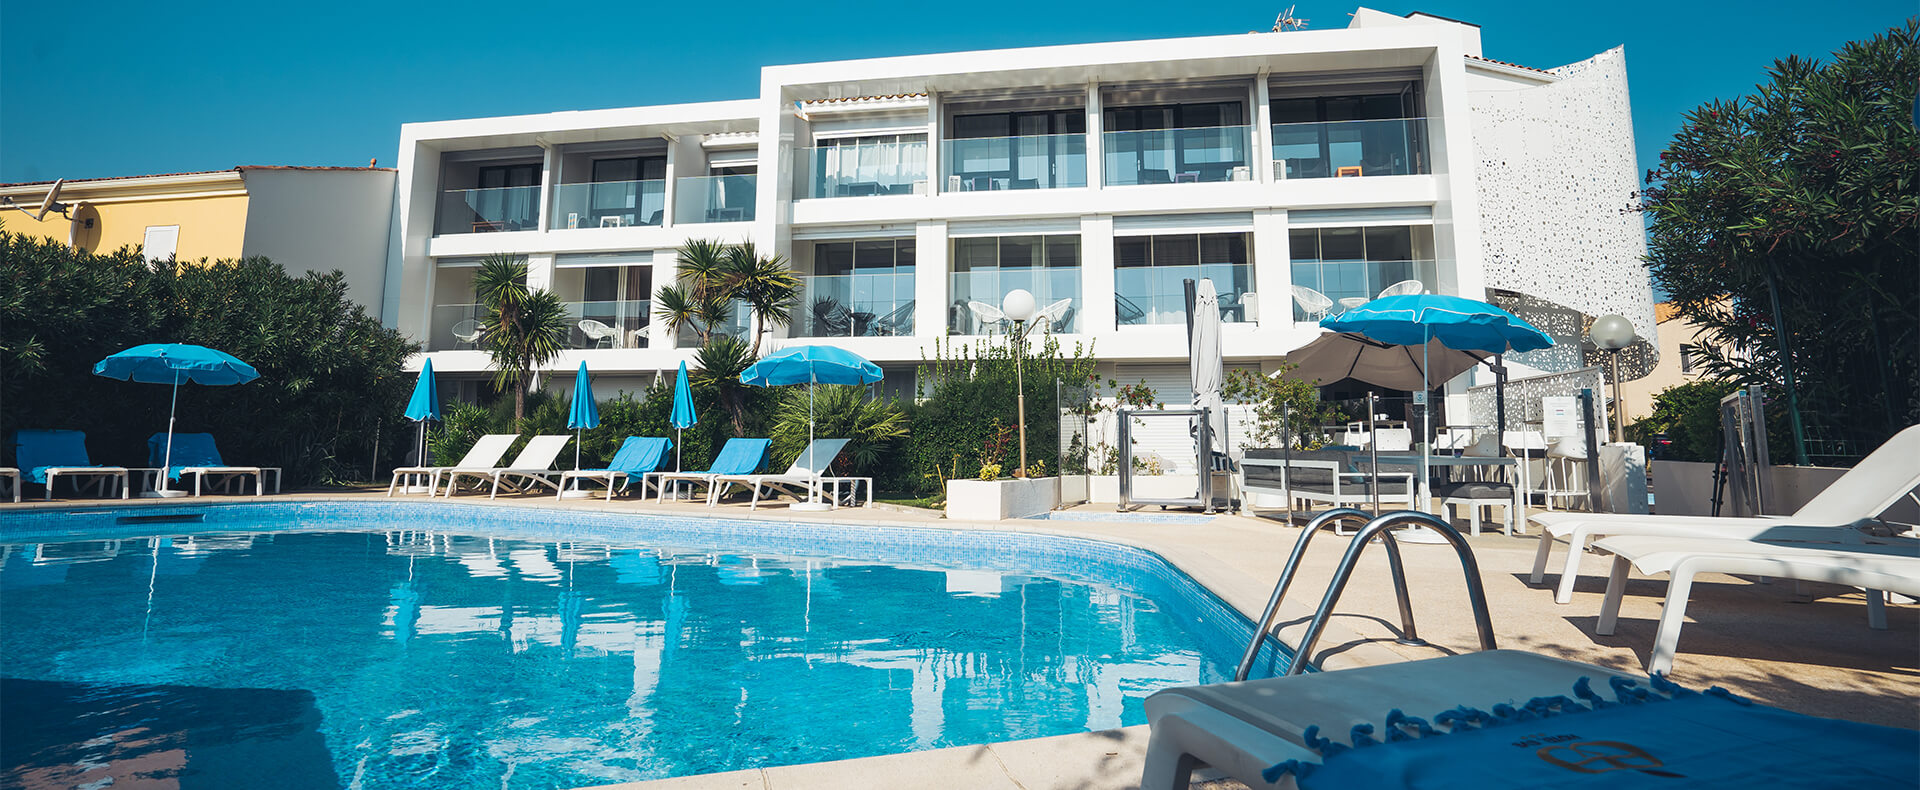 Piscina Hotel Eve, Naturist Hotel a Cap d'Agde